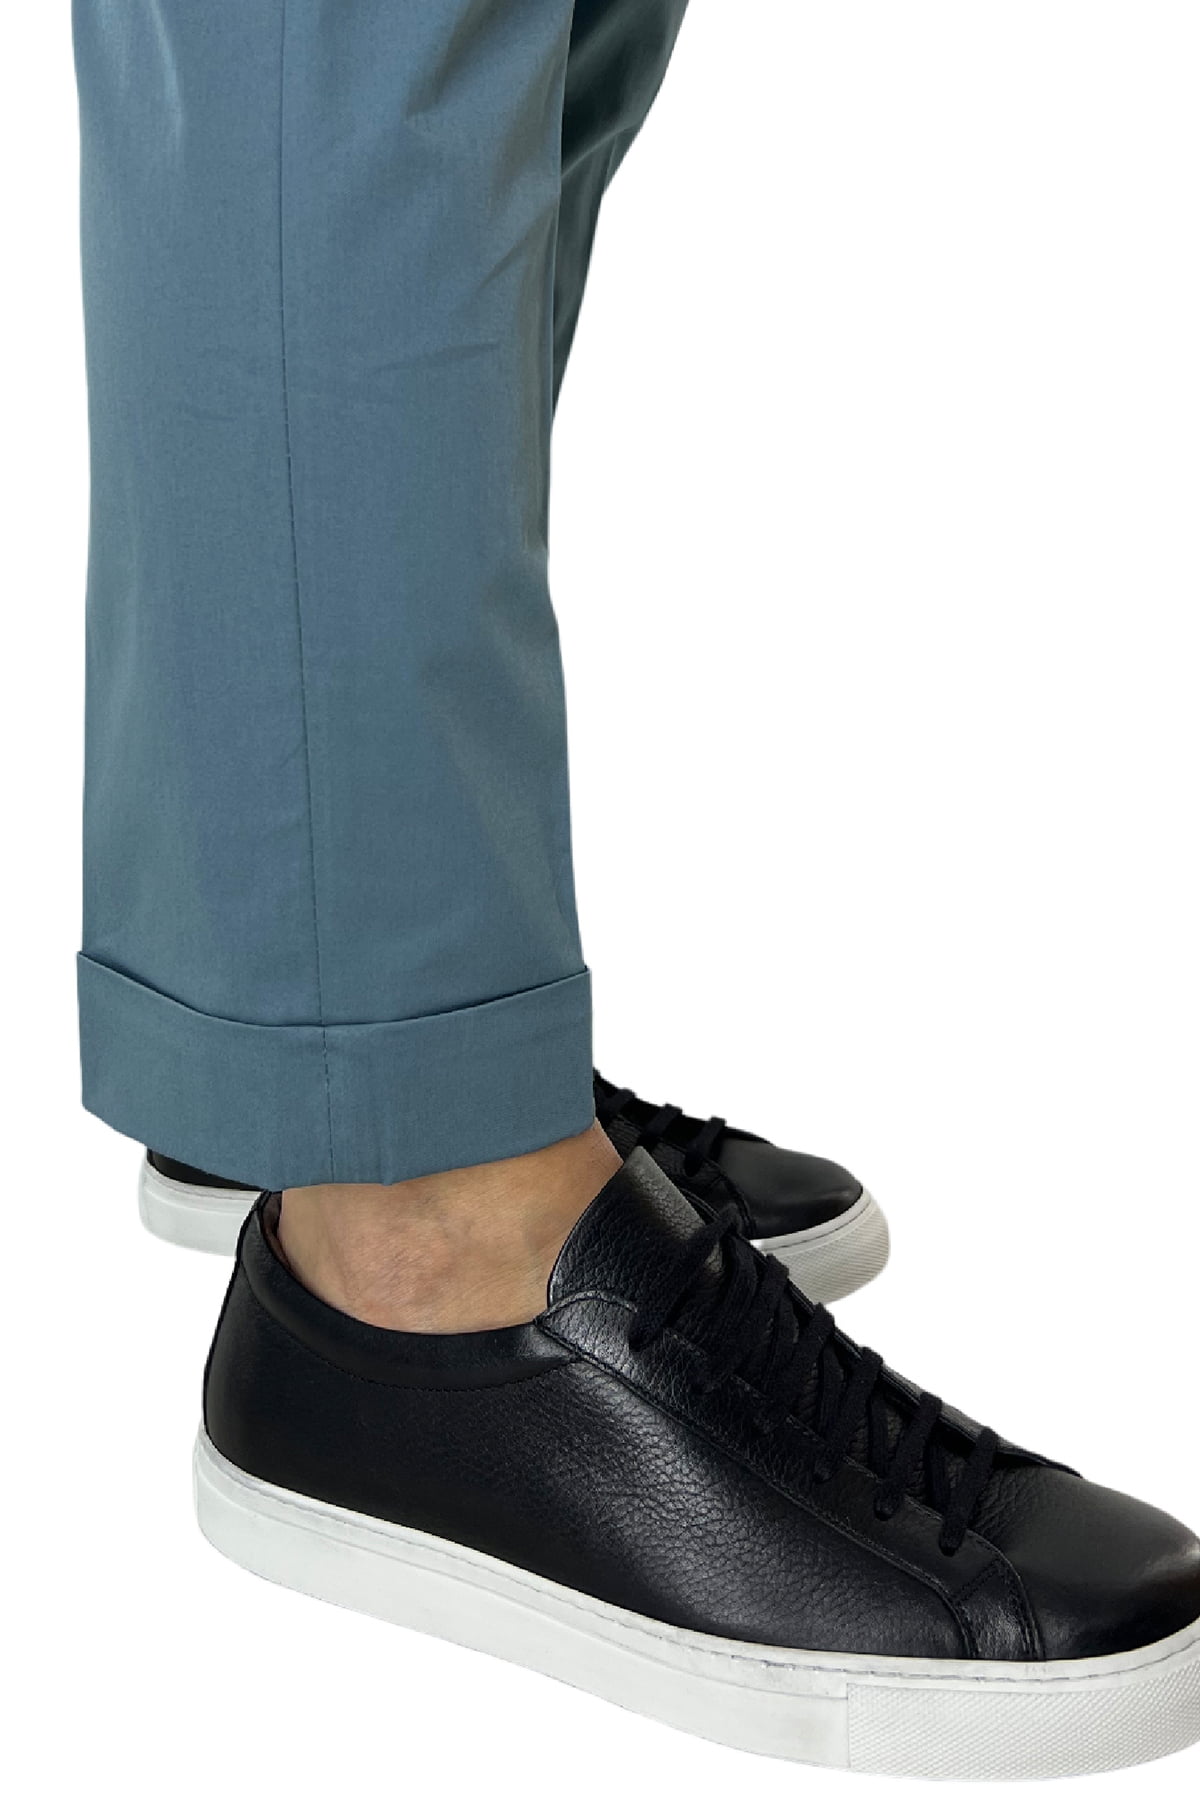 Pantalone uomo Celeste in cotone tasca america con pence made in italy